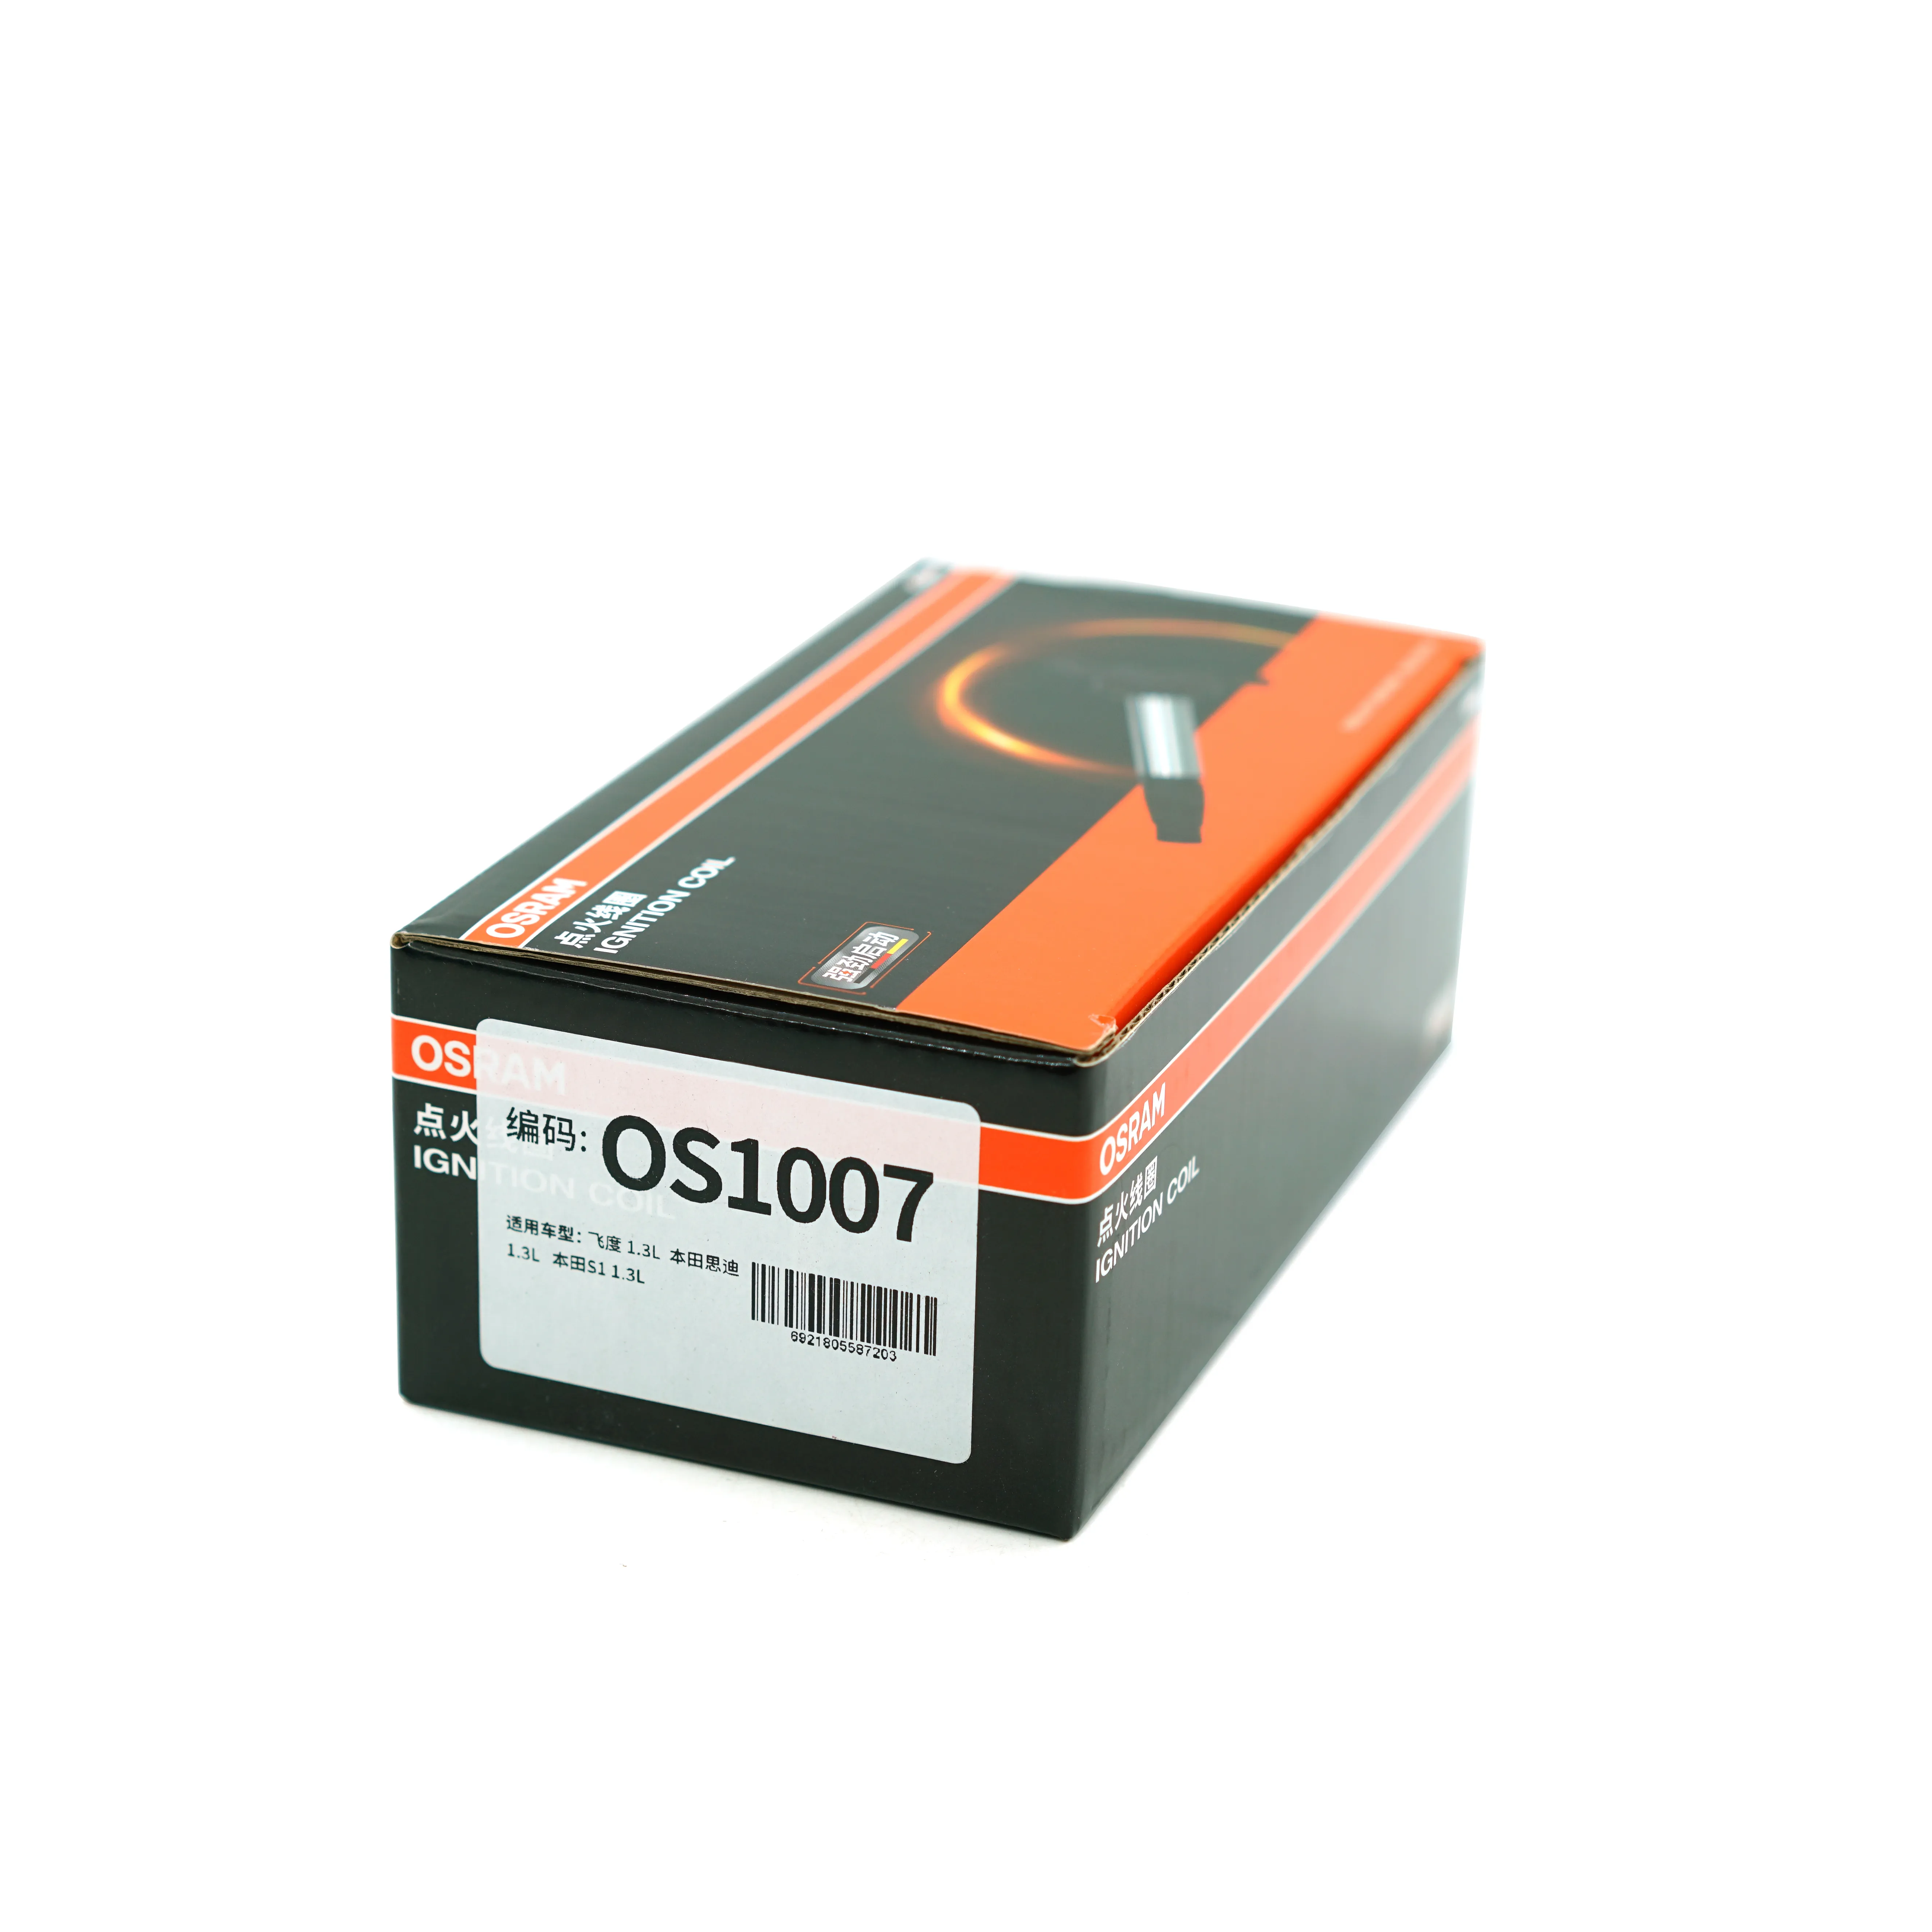 OSRAM Ignition Coil OS1007 for Honda